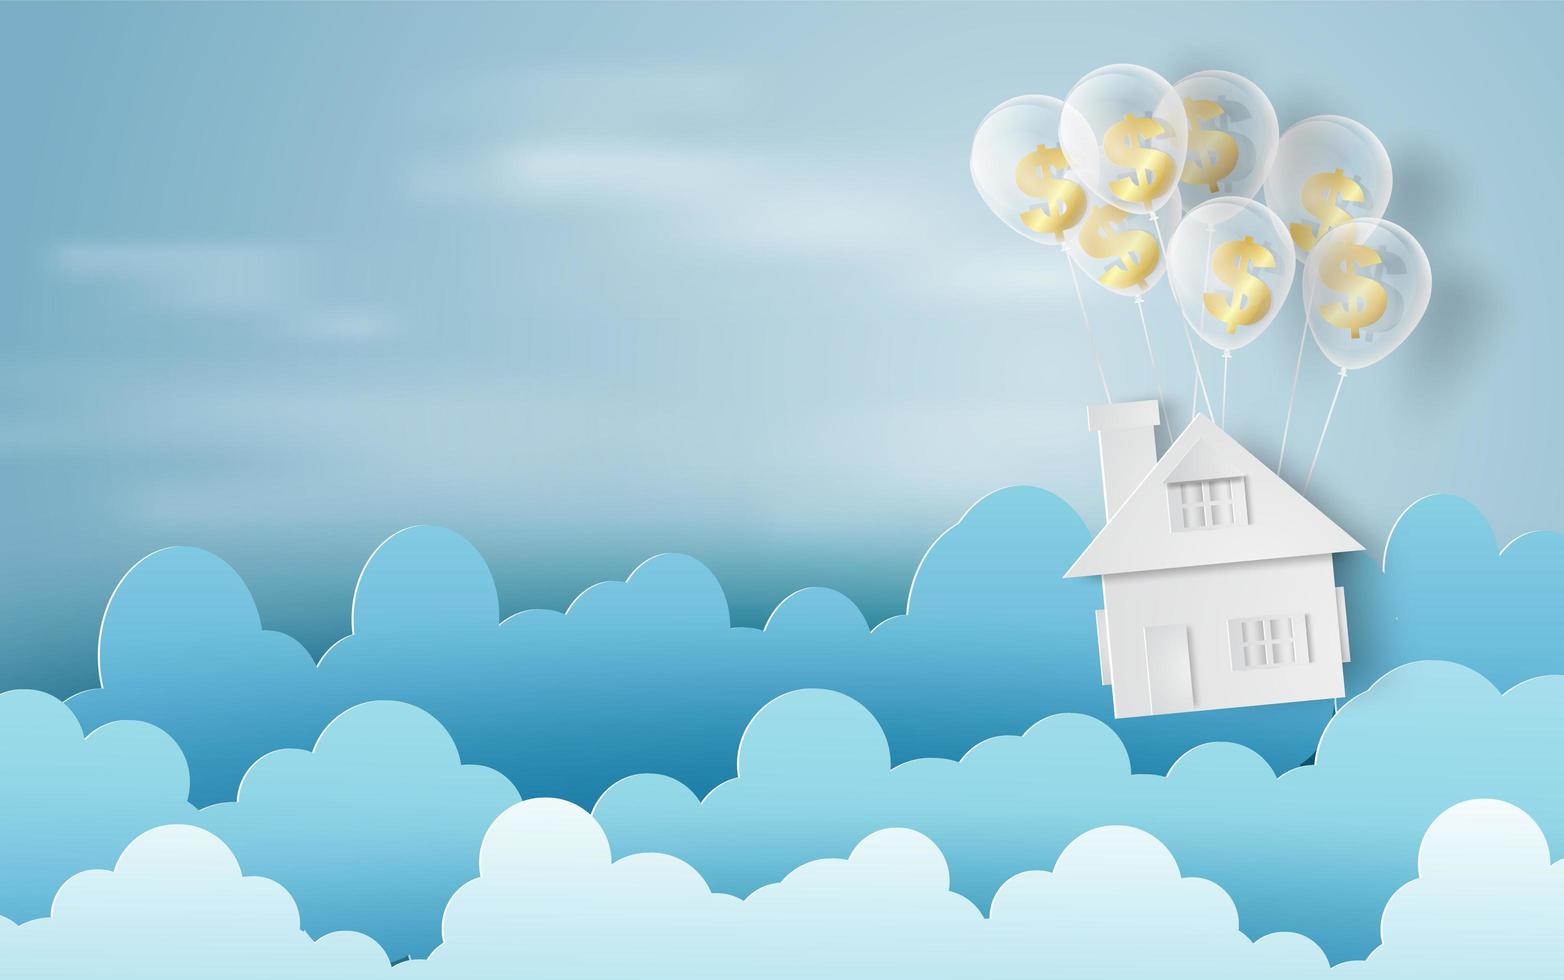 papperskonst av ballonger som moln på blå himmel banner med hus vektor